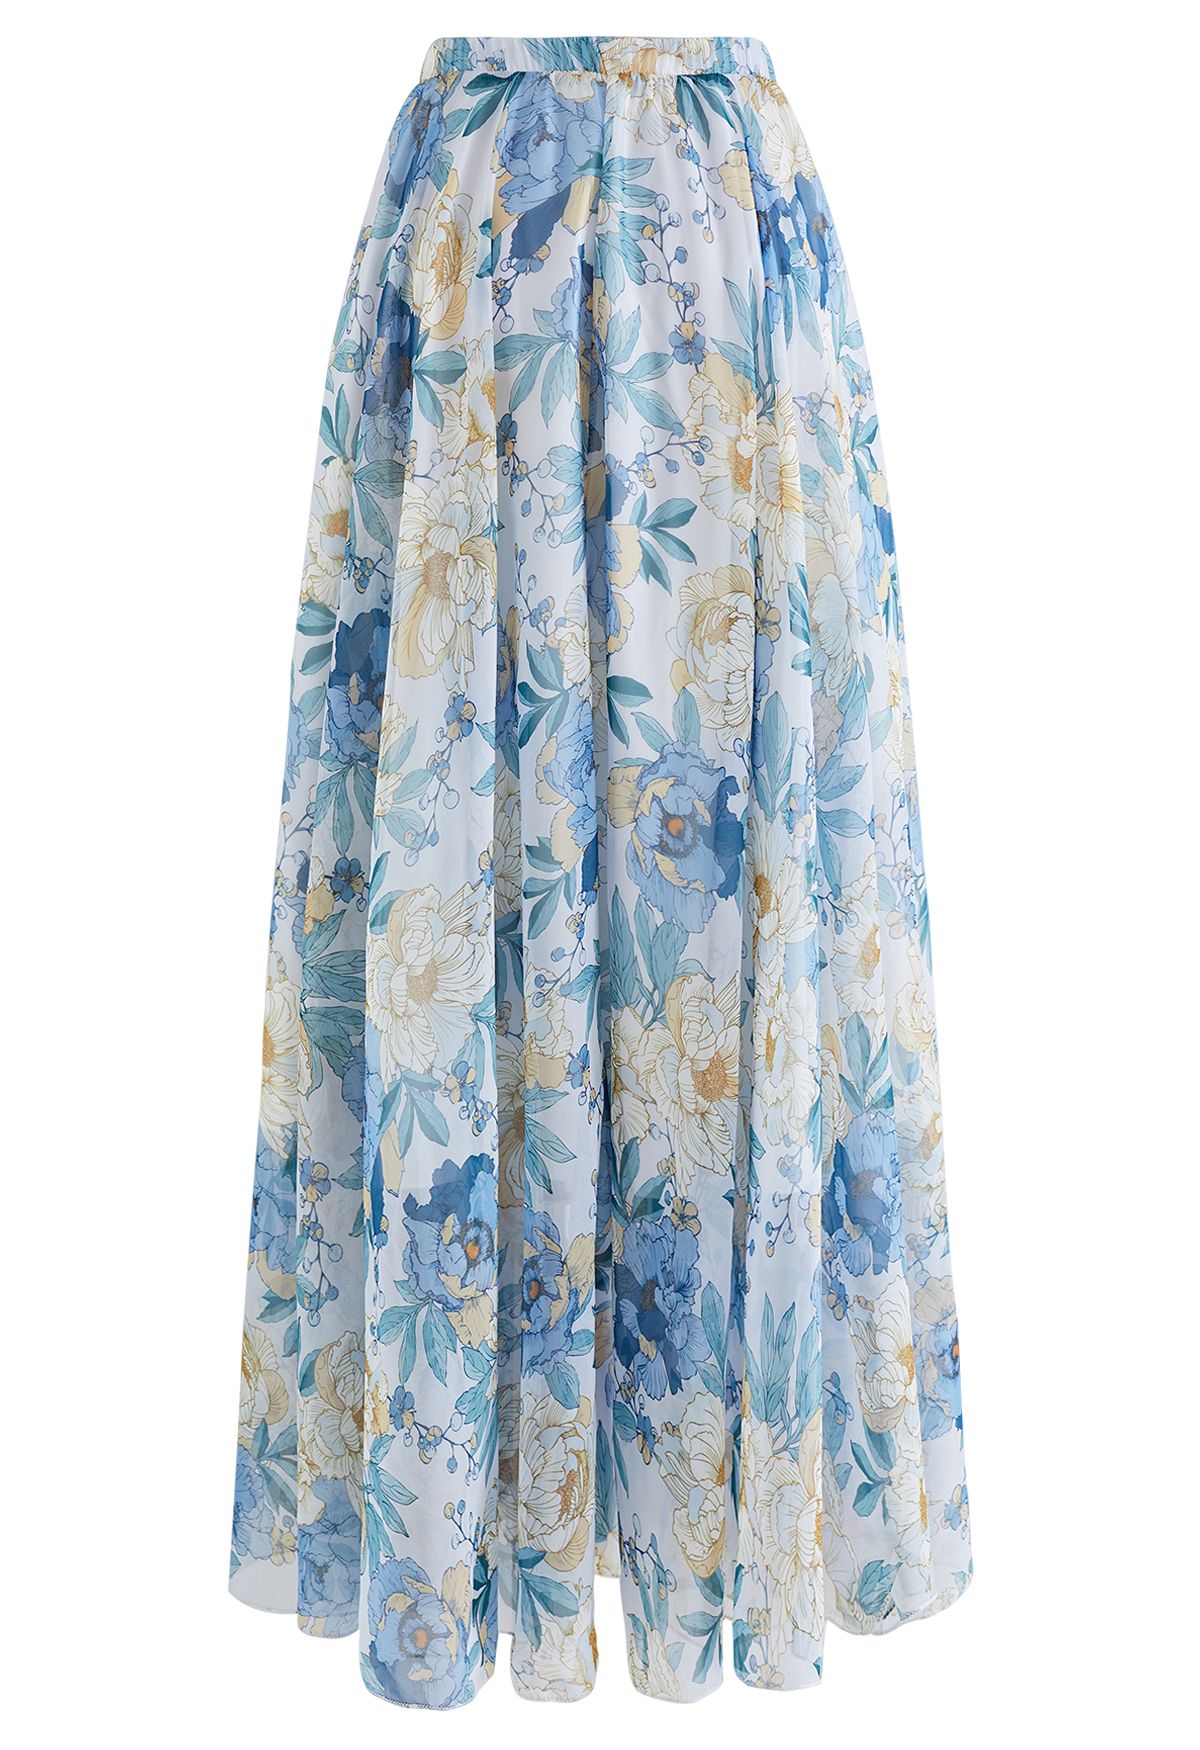 Bluish Floral Fresh Aroma Chiffon Maxi Skirt